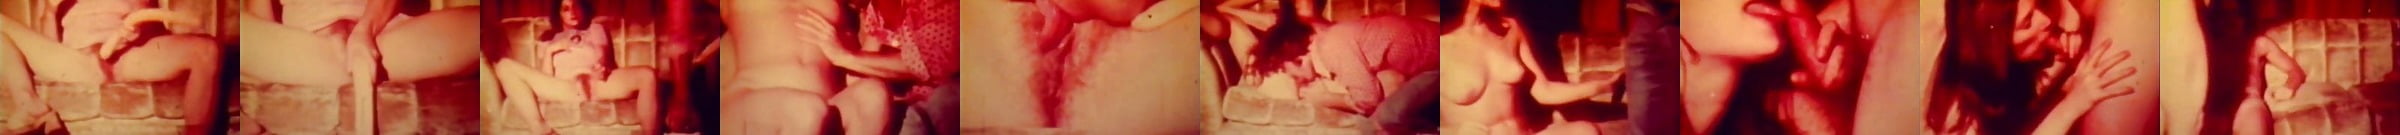 Vintage Amateur Couple Homemade Sex Tape Porn 3c